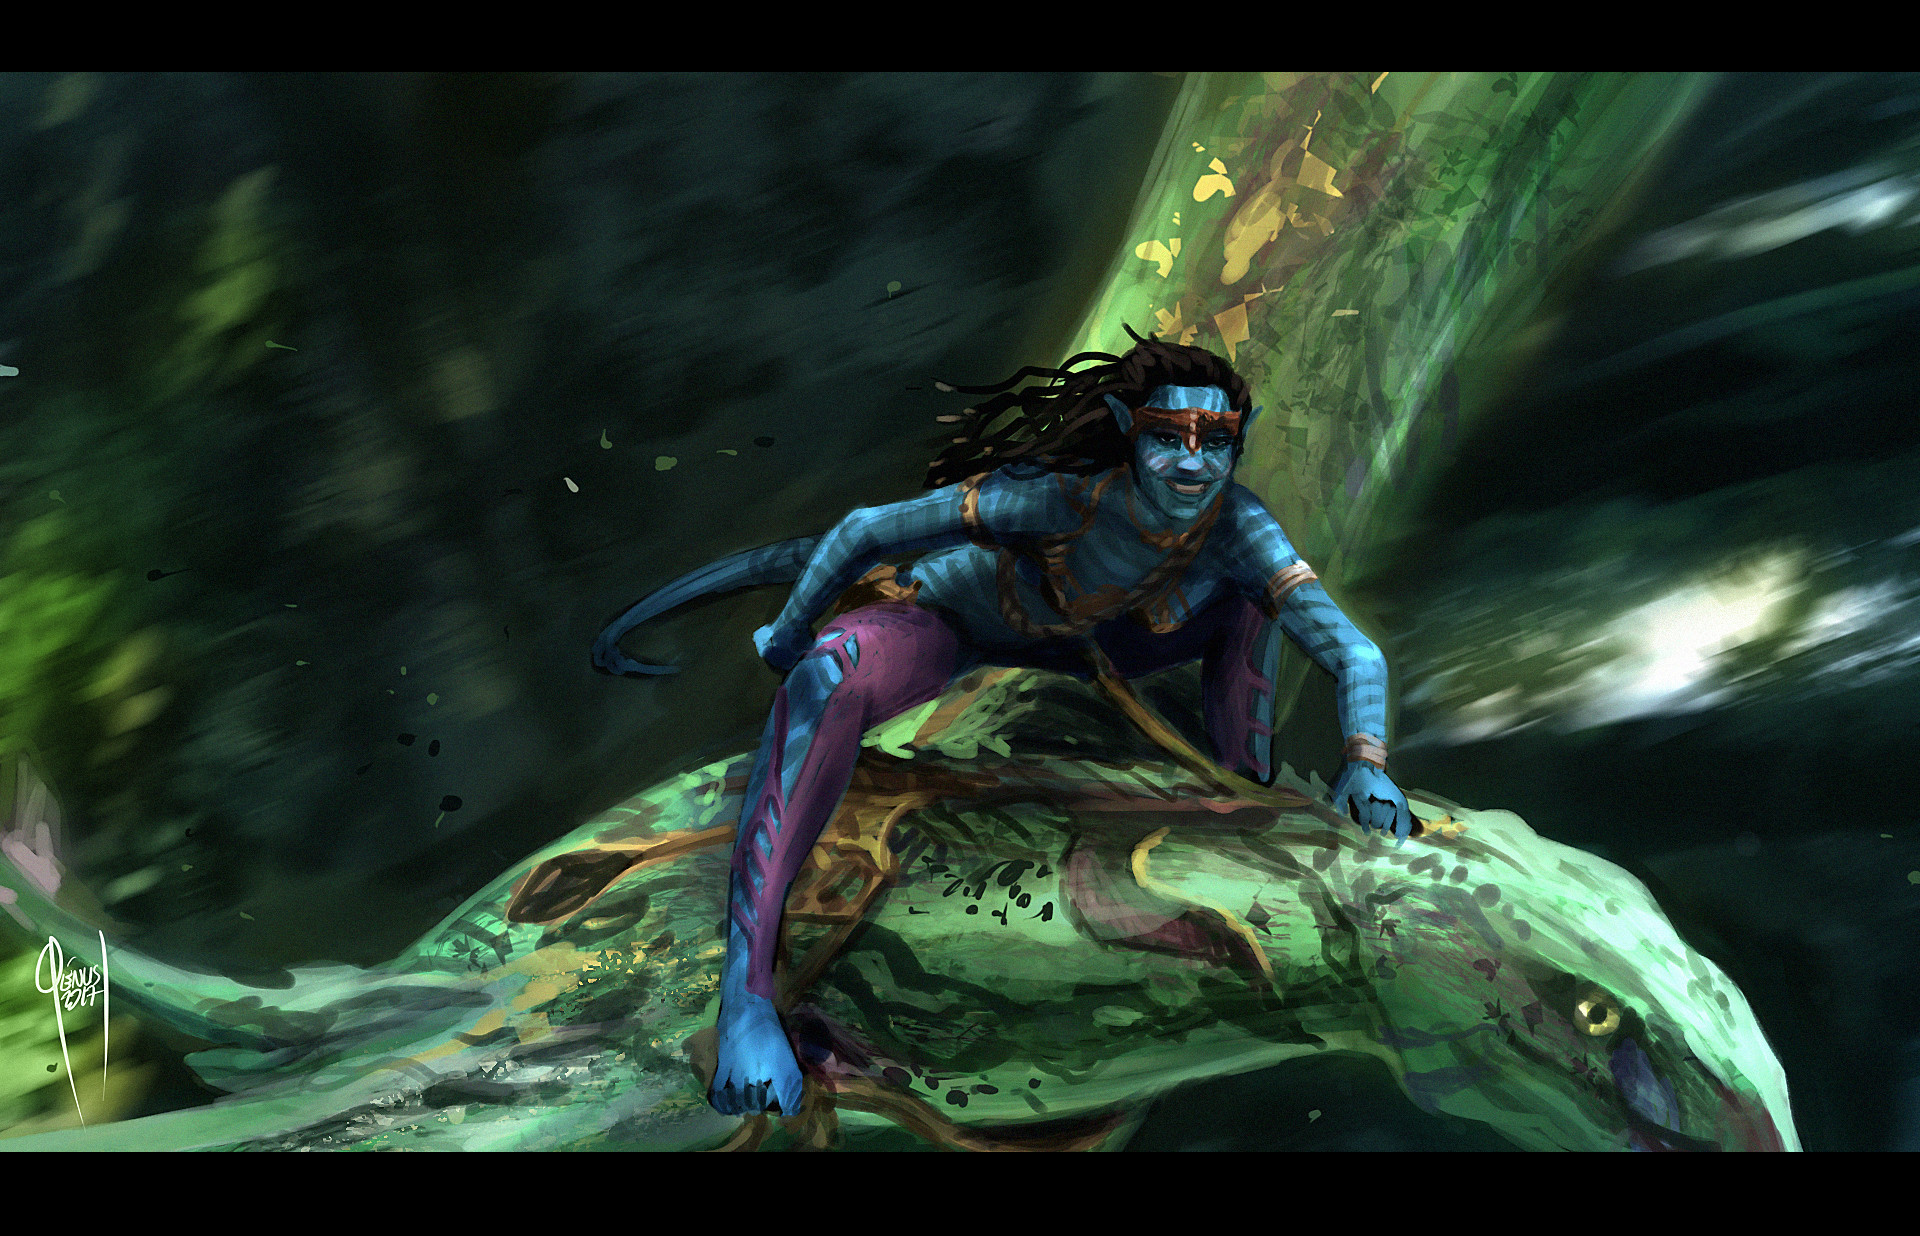 Avatar 2 film still study by mintyforestart on DeviantArt